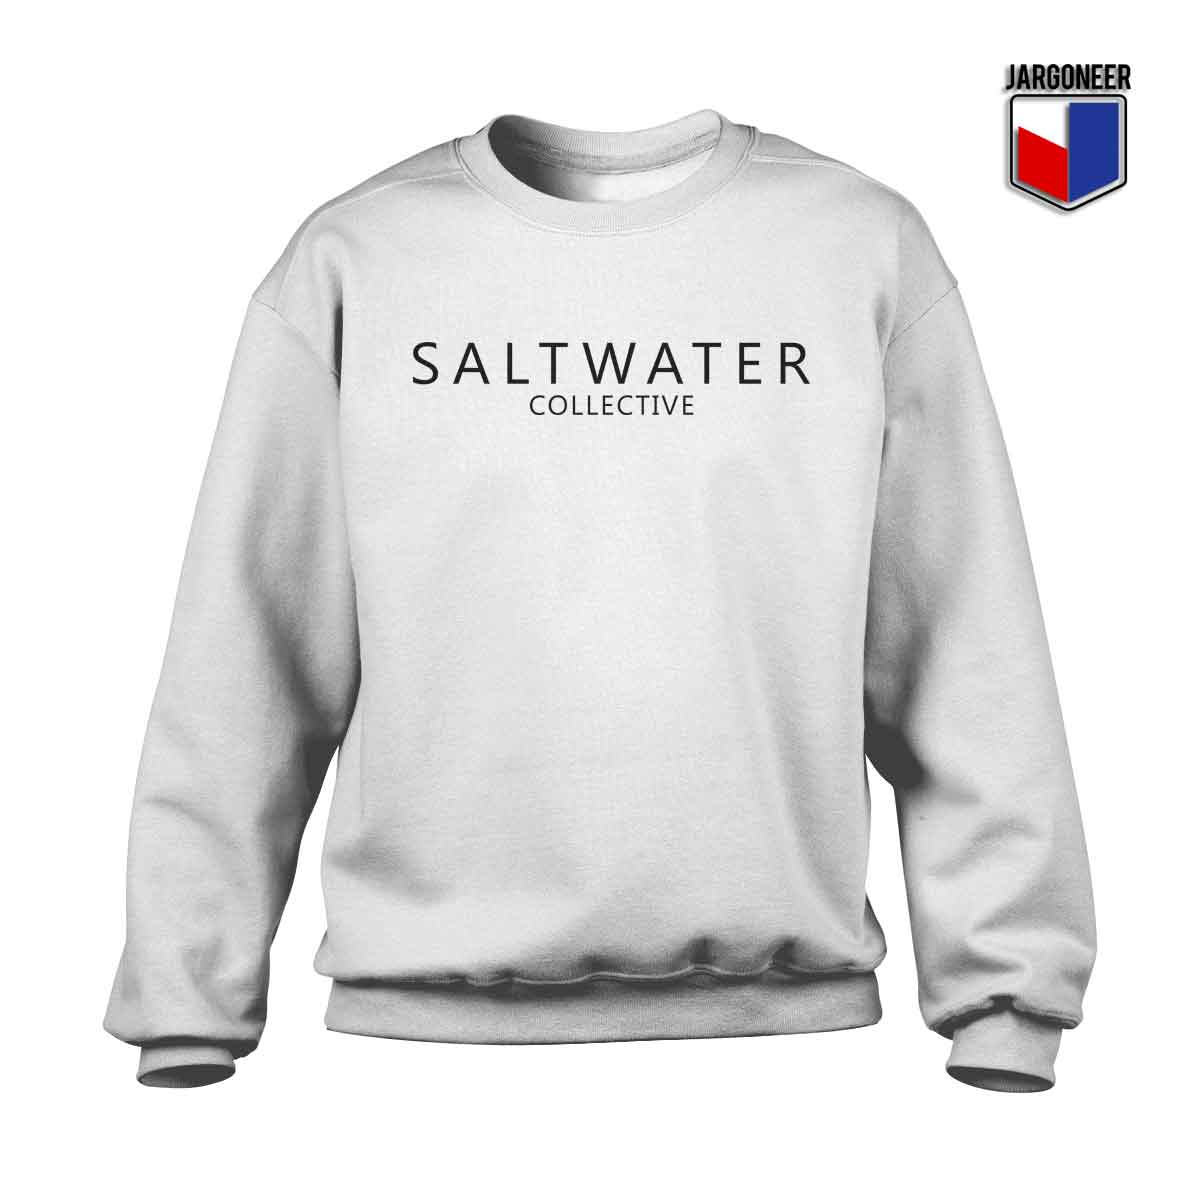 Saltwater Collective 1 - Shop Unique Graphic Cool Shirt Designs